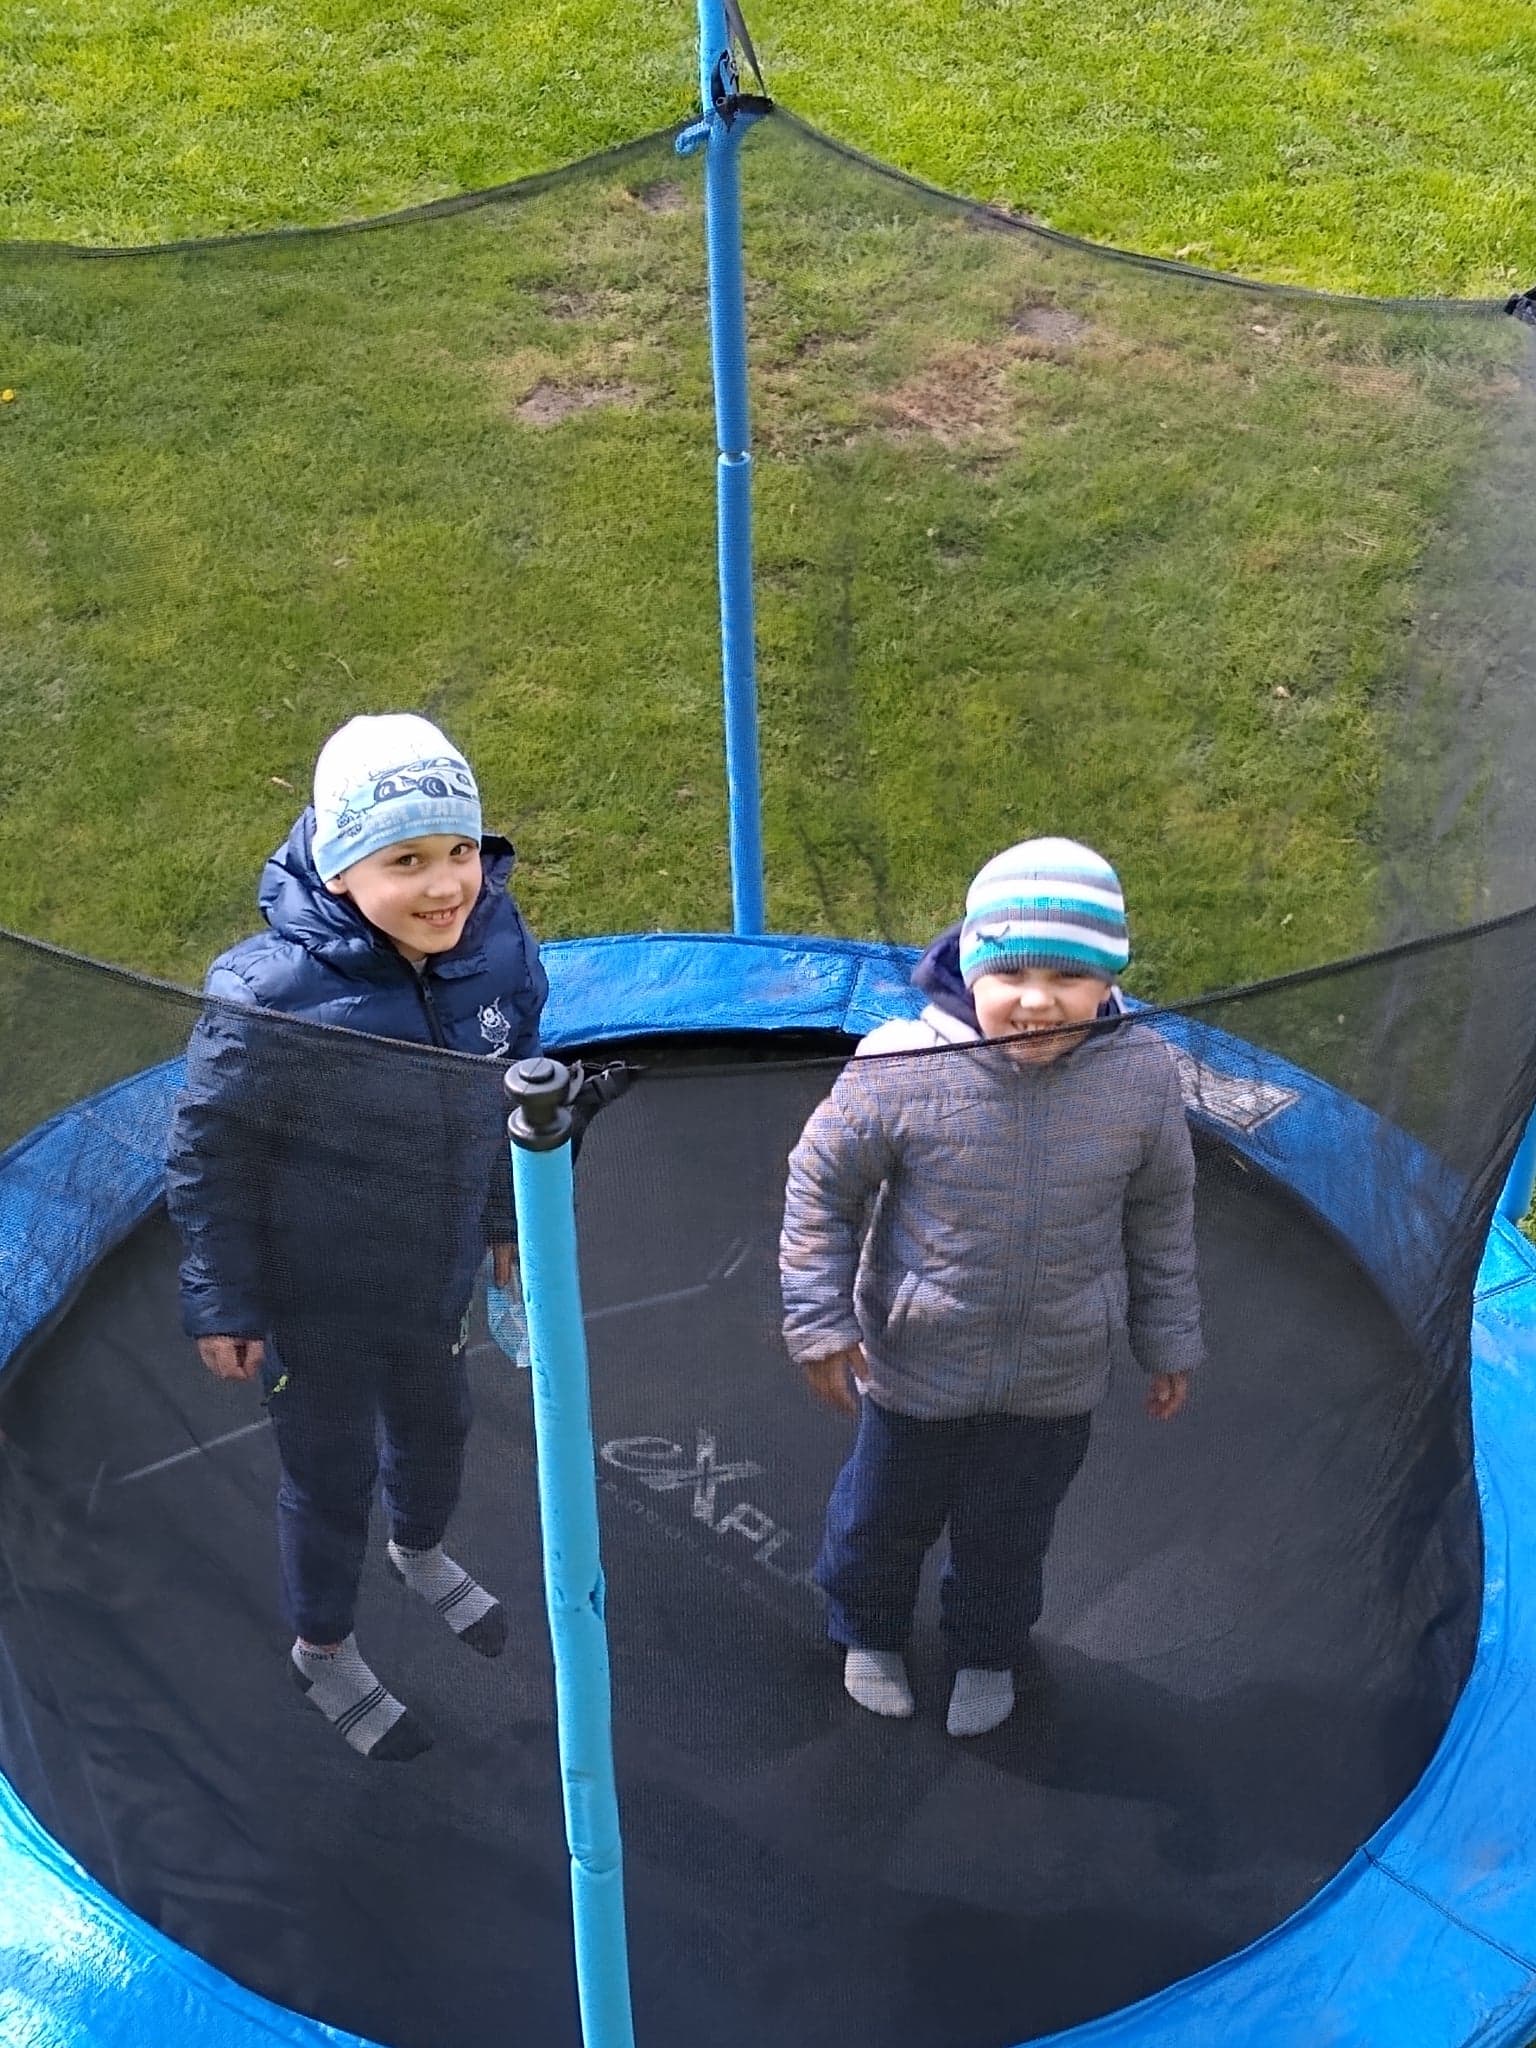 dwaj chłopcy skaczą na trampolinie